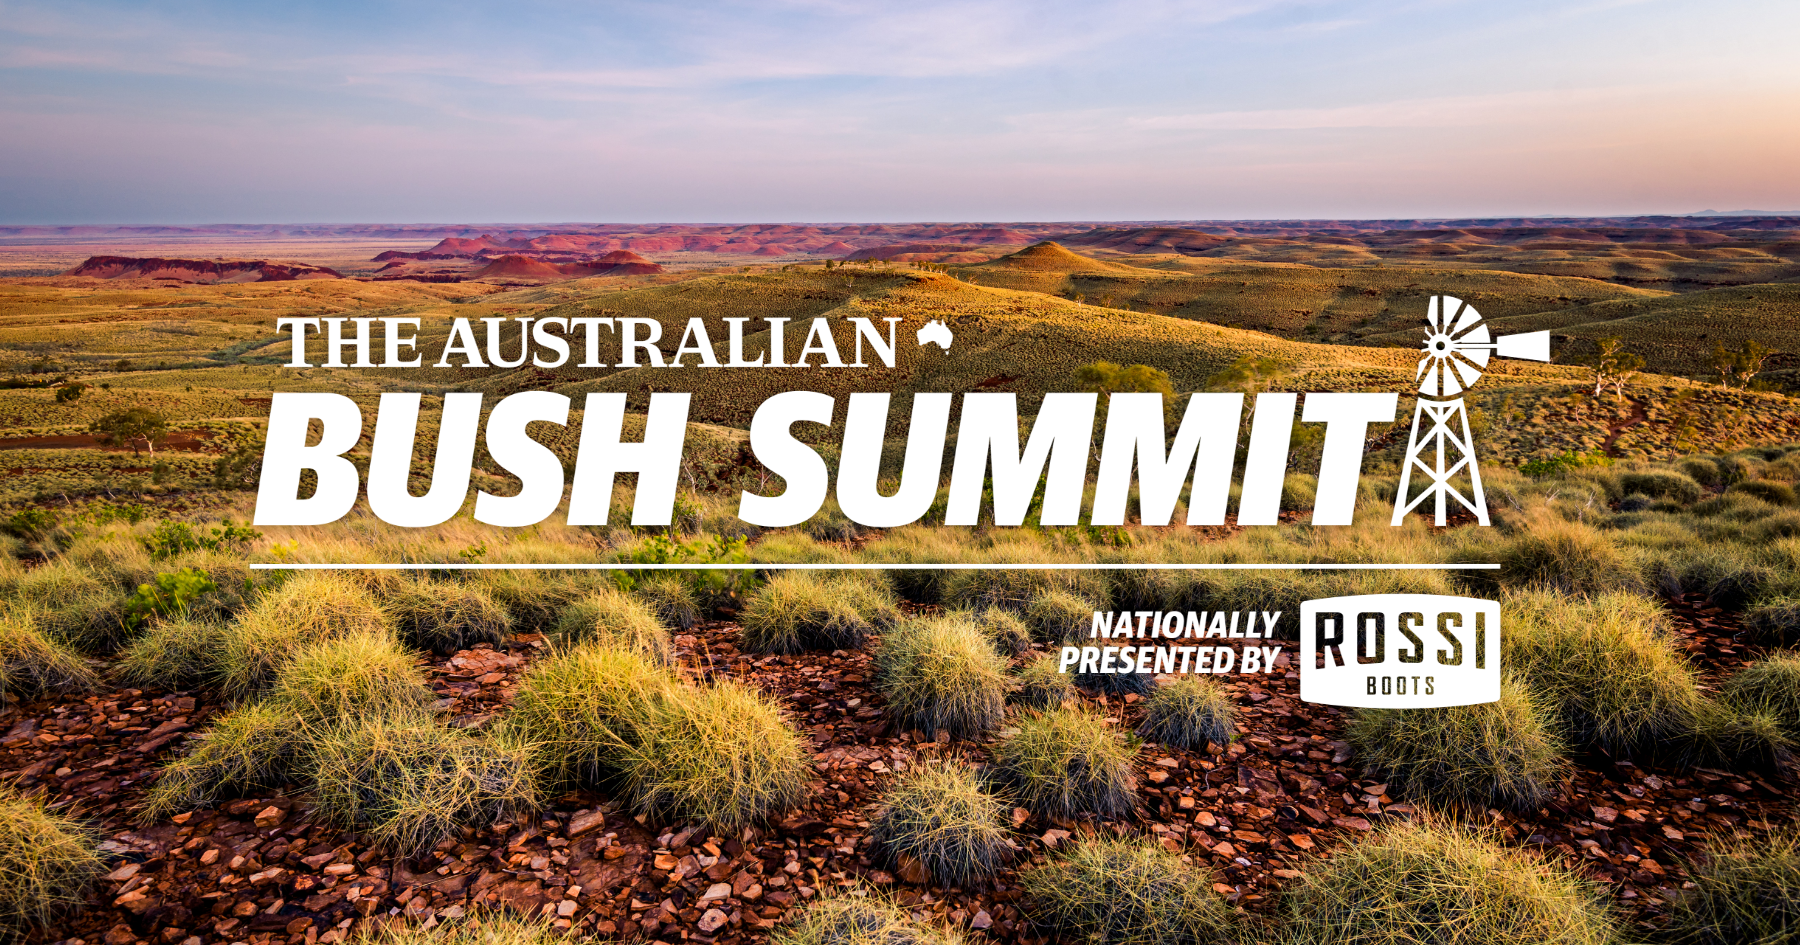 The Australian Bush Summit